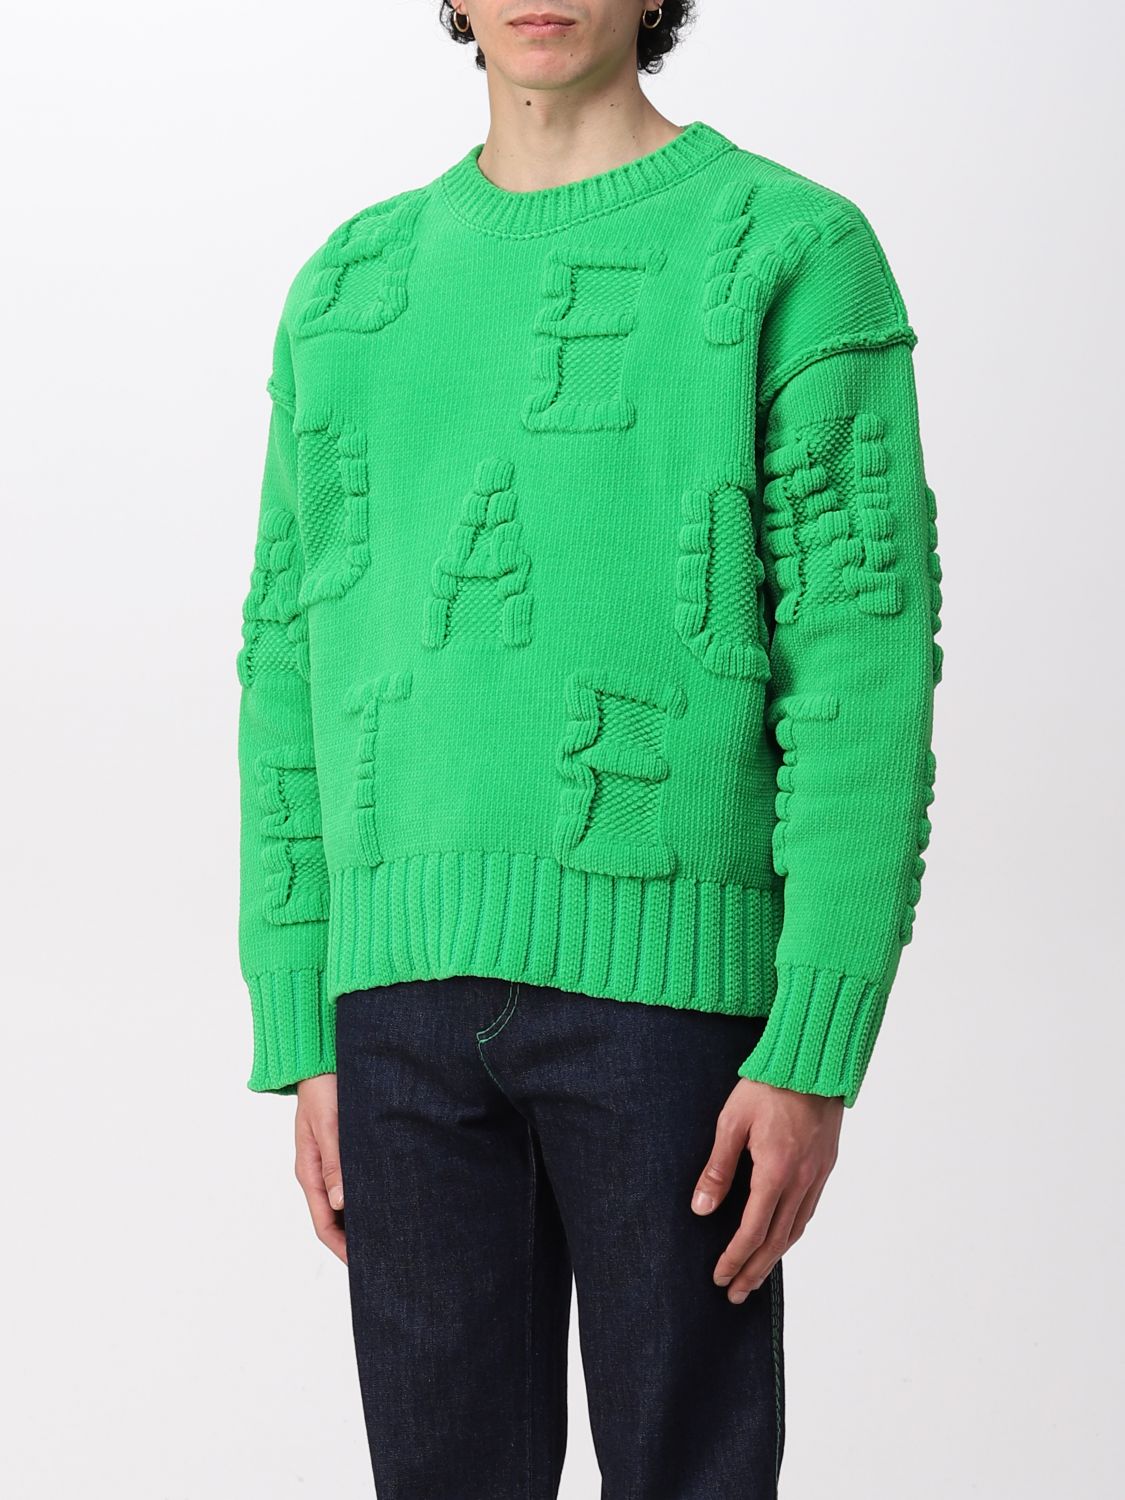 BOTTEGA VENETA: nylon sweater with embossed logo - Green | Bottega ...